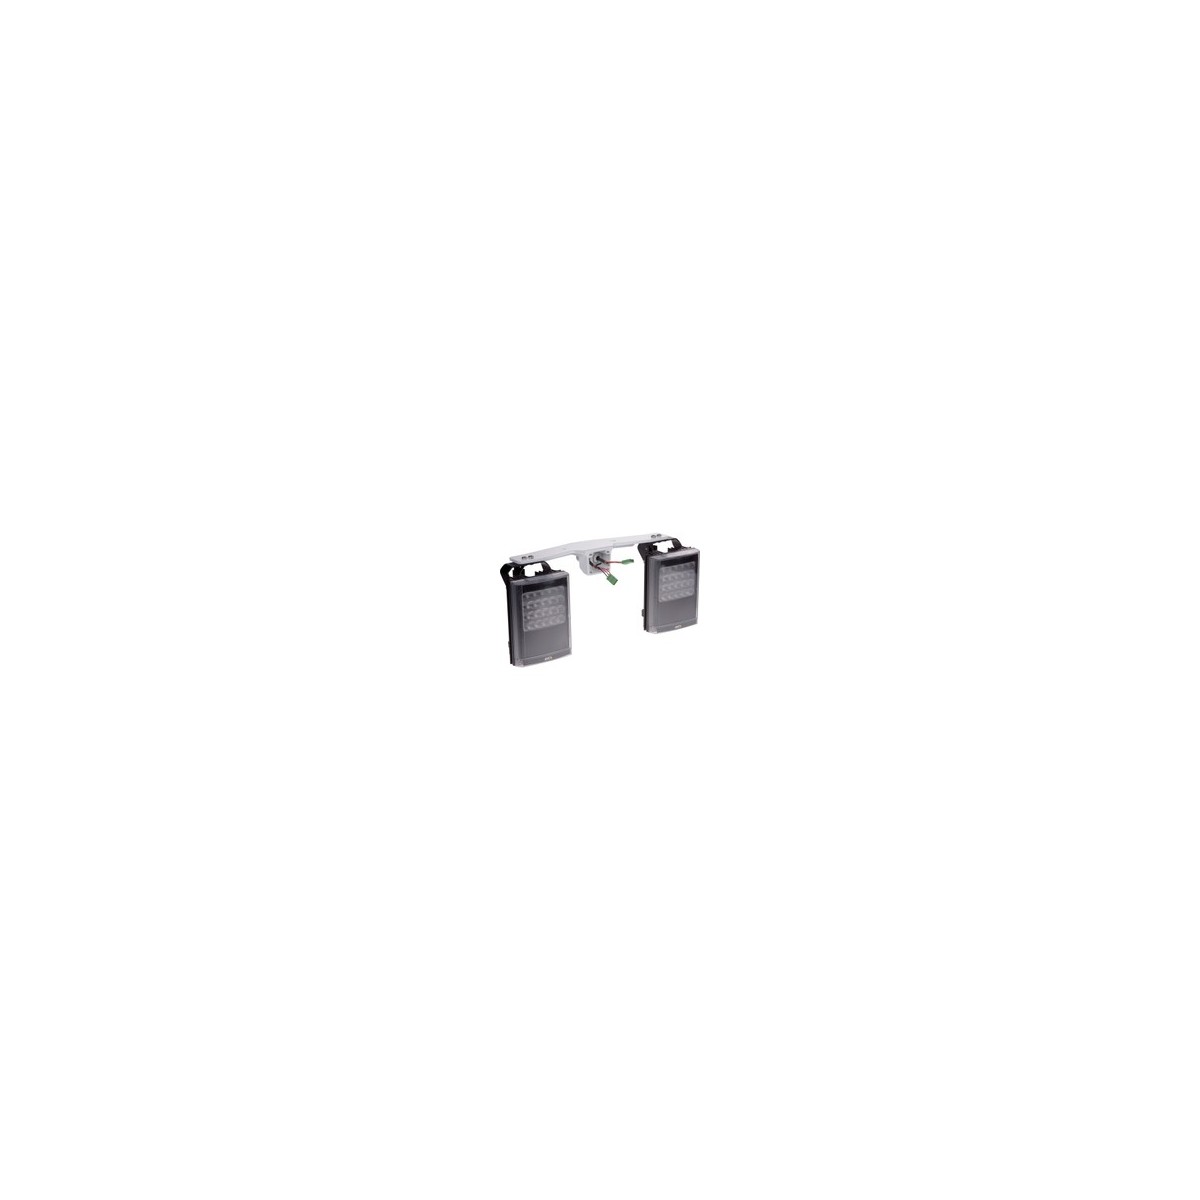 Axis 5801-901 - Illuminator - Outdoor - Black,White - 12 -24 V